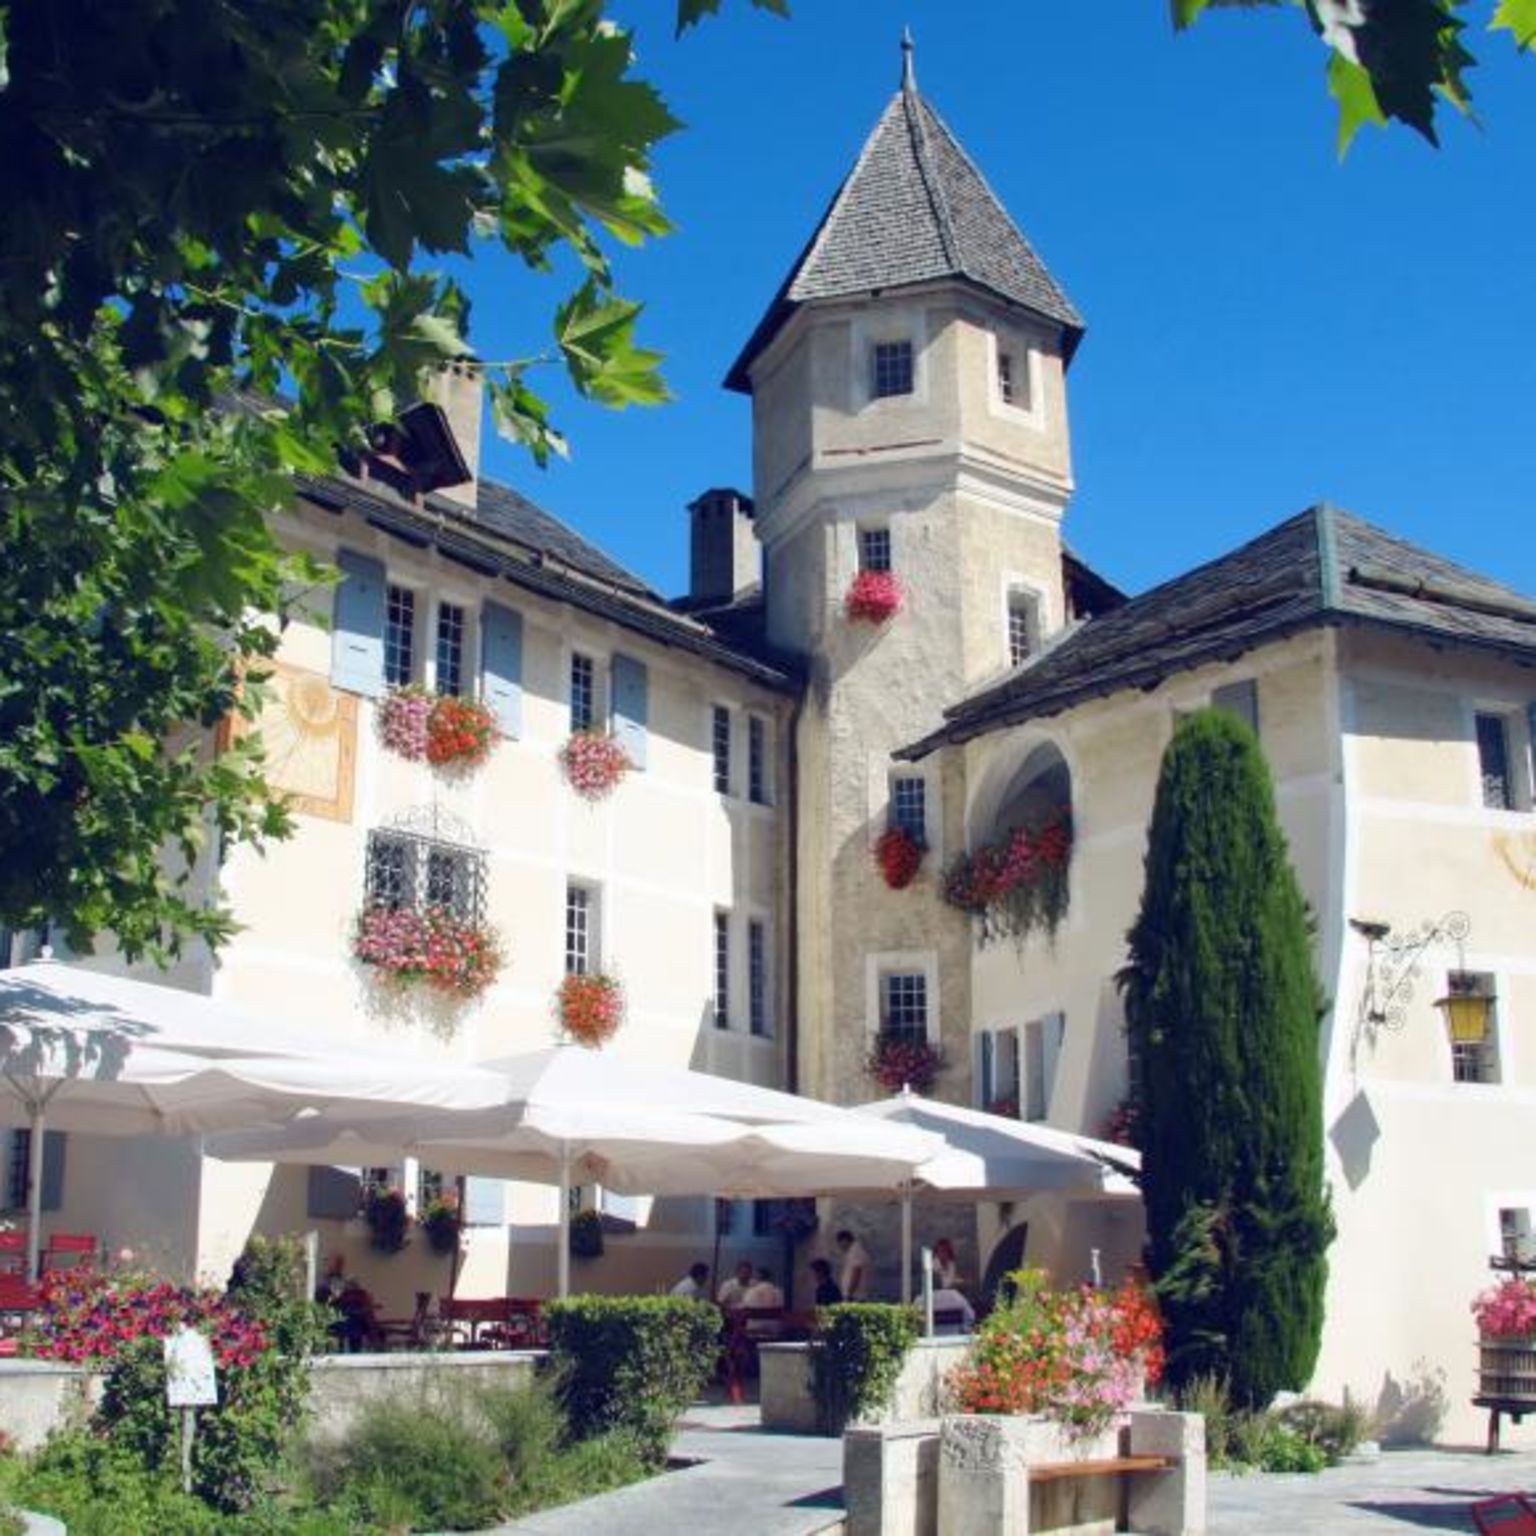 Verkaufsstelle Château de Villa, Siders, Wallis, Schweiz